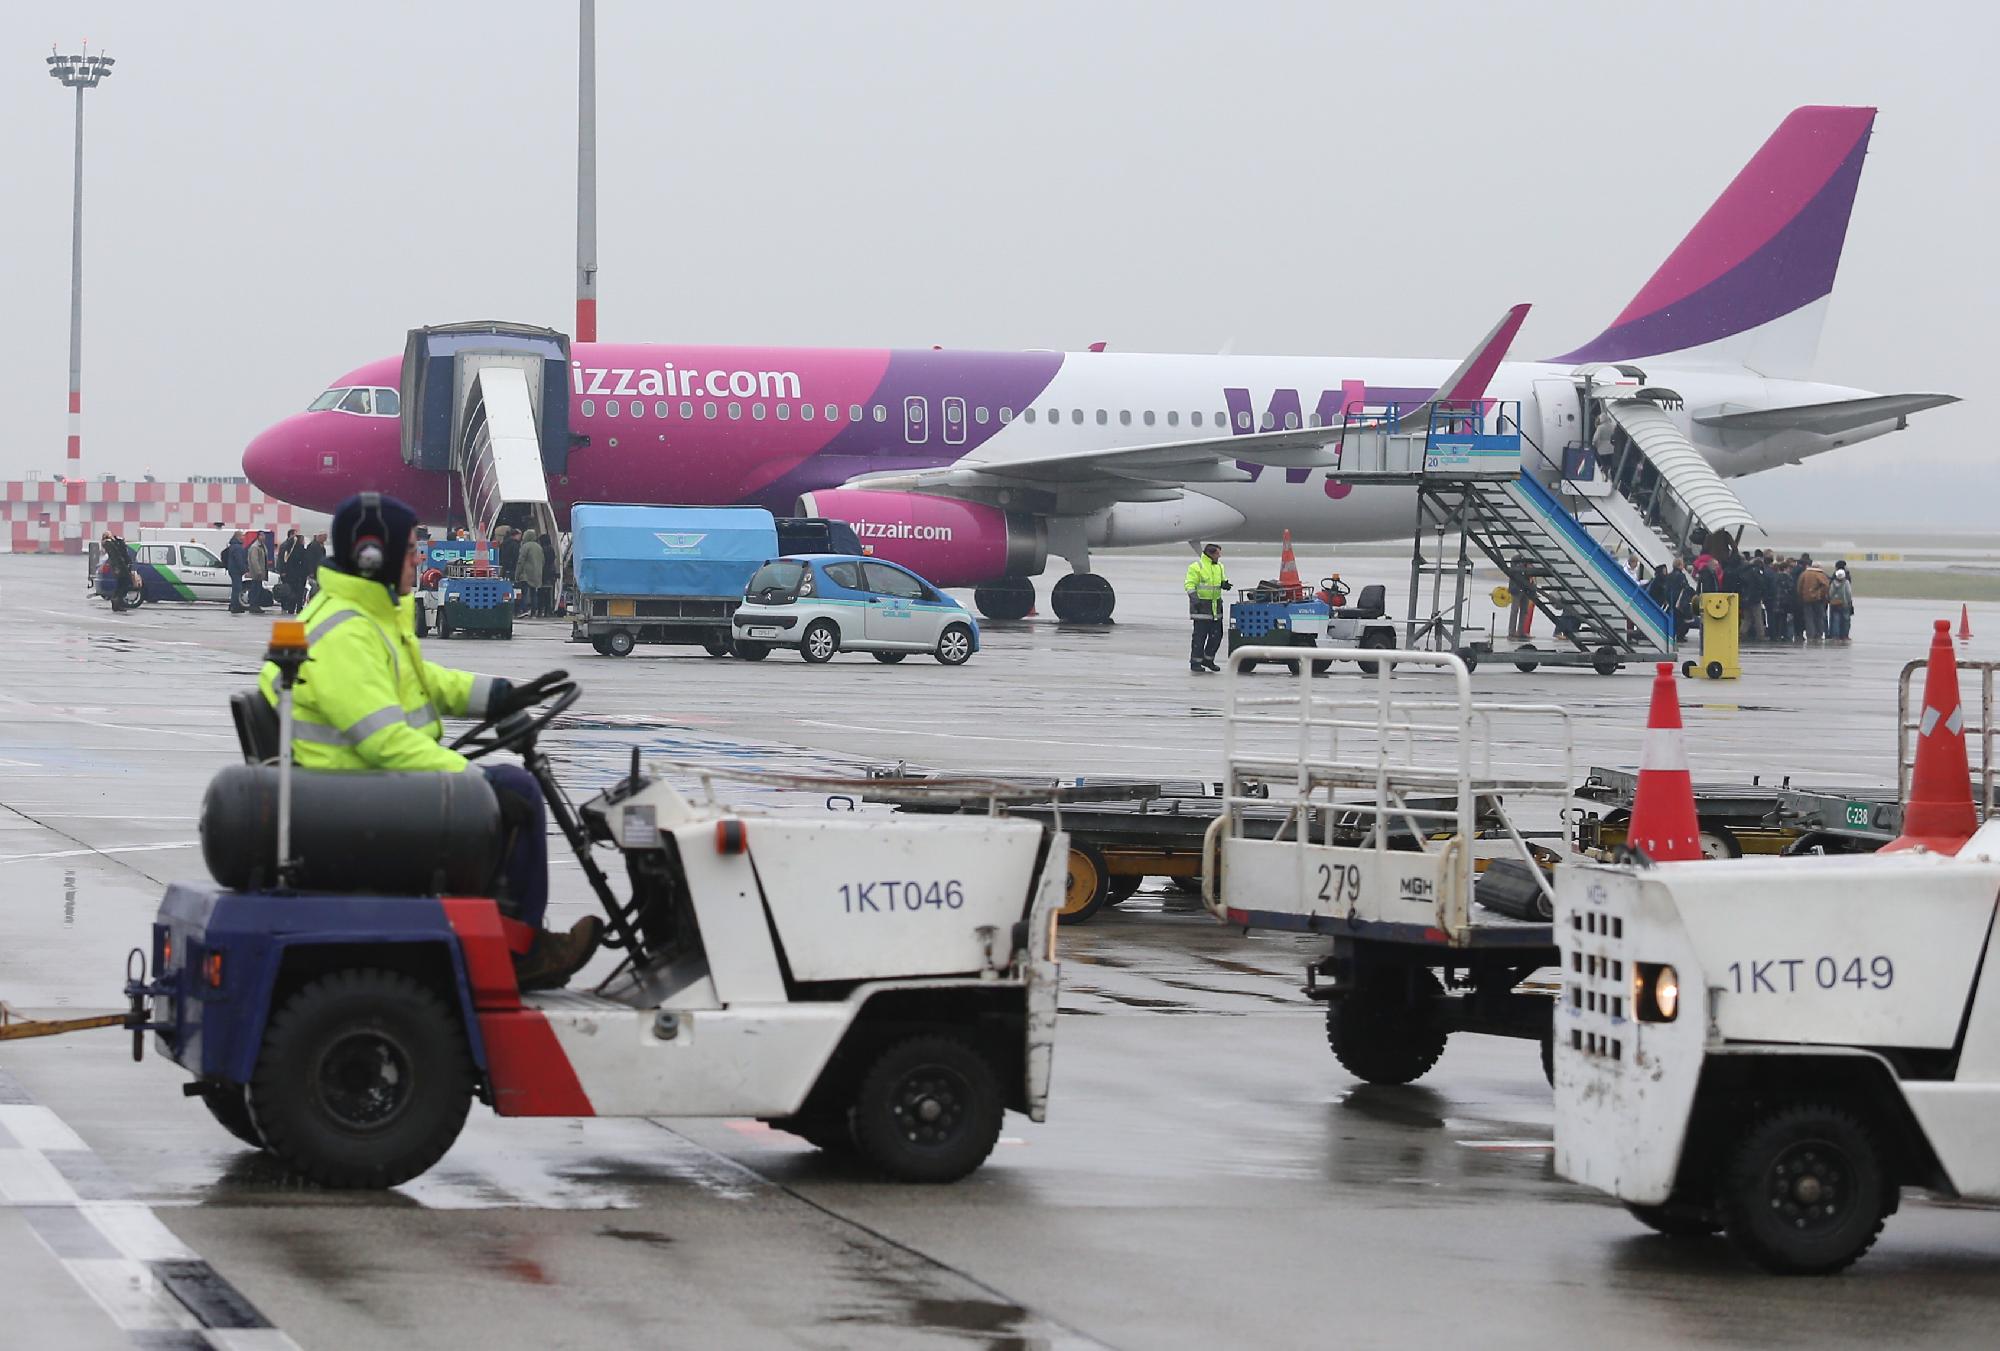 Nem lesz elérhető a Wizz Air internetes felülete és mobilalkalmazása